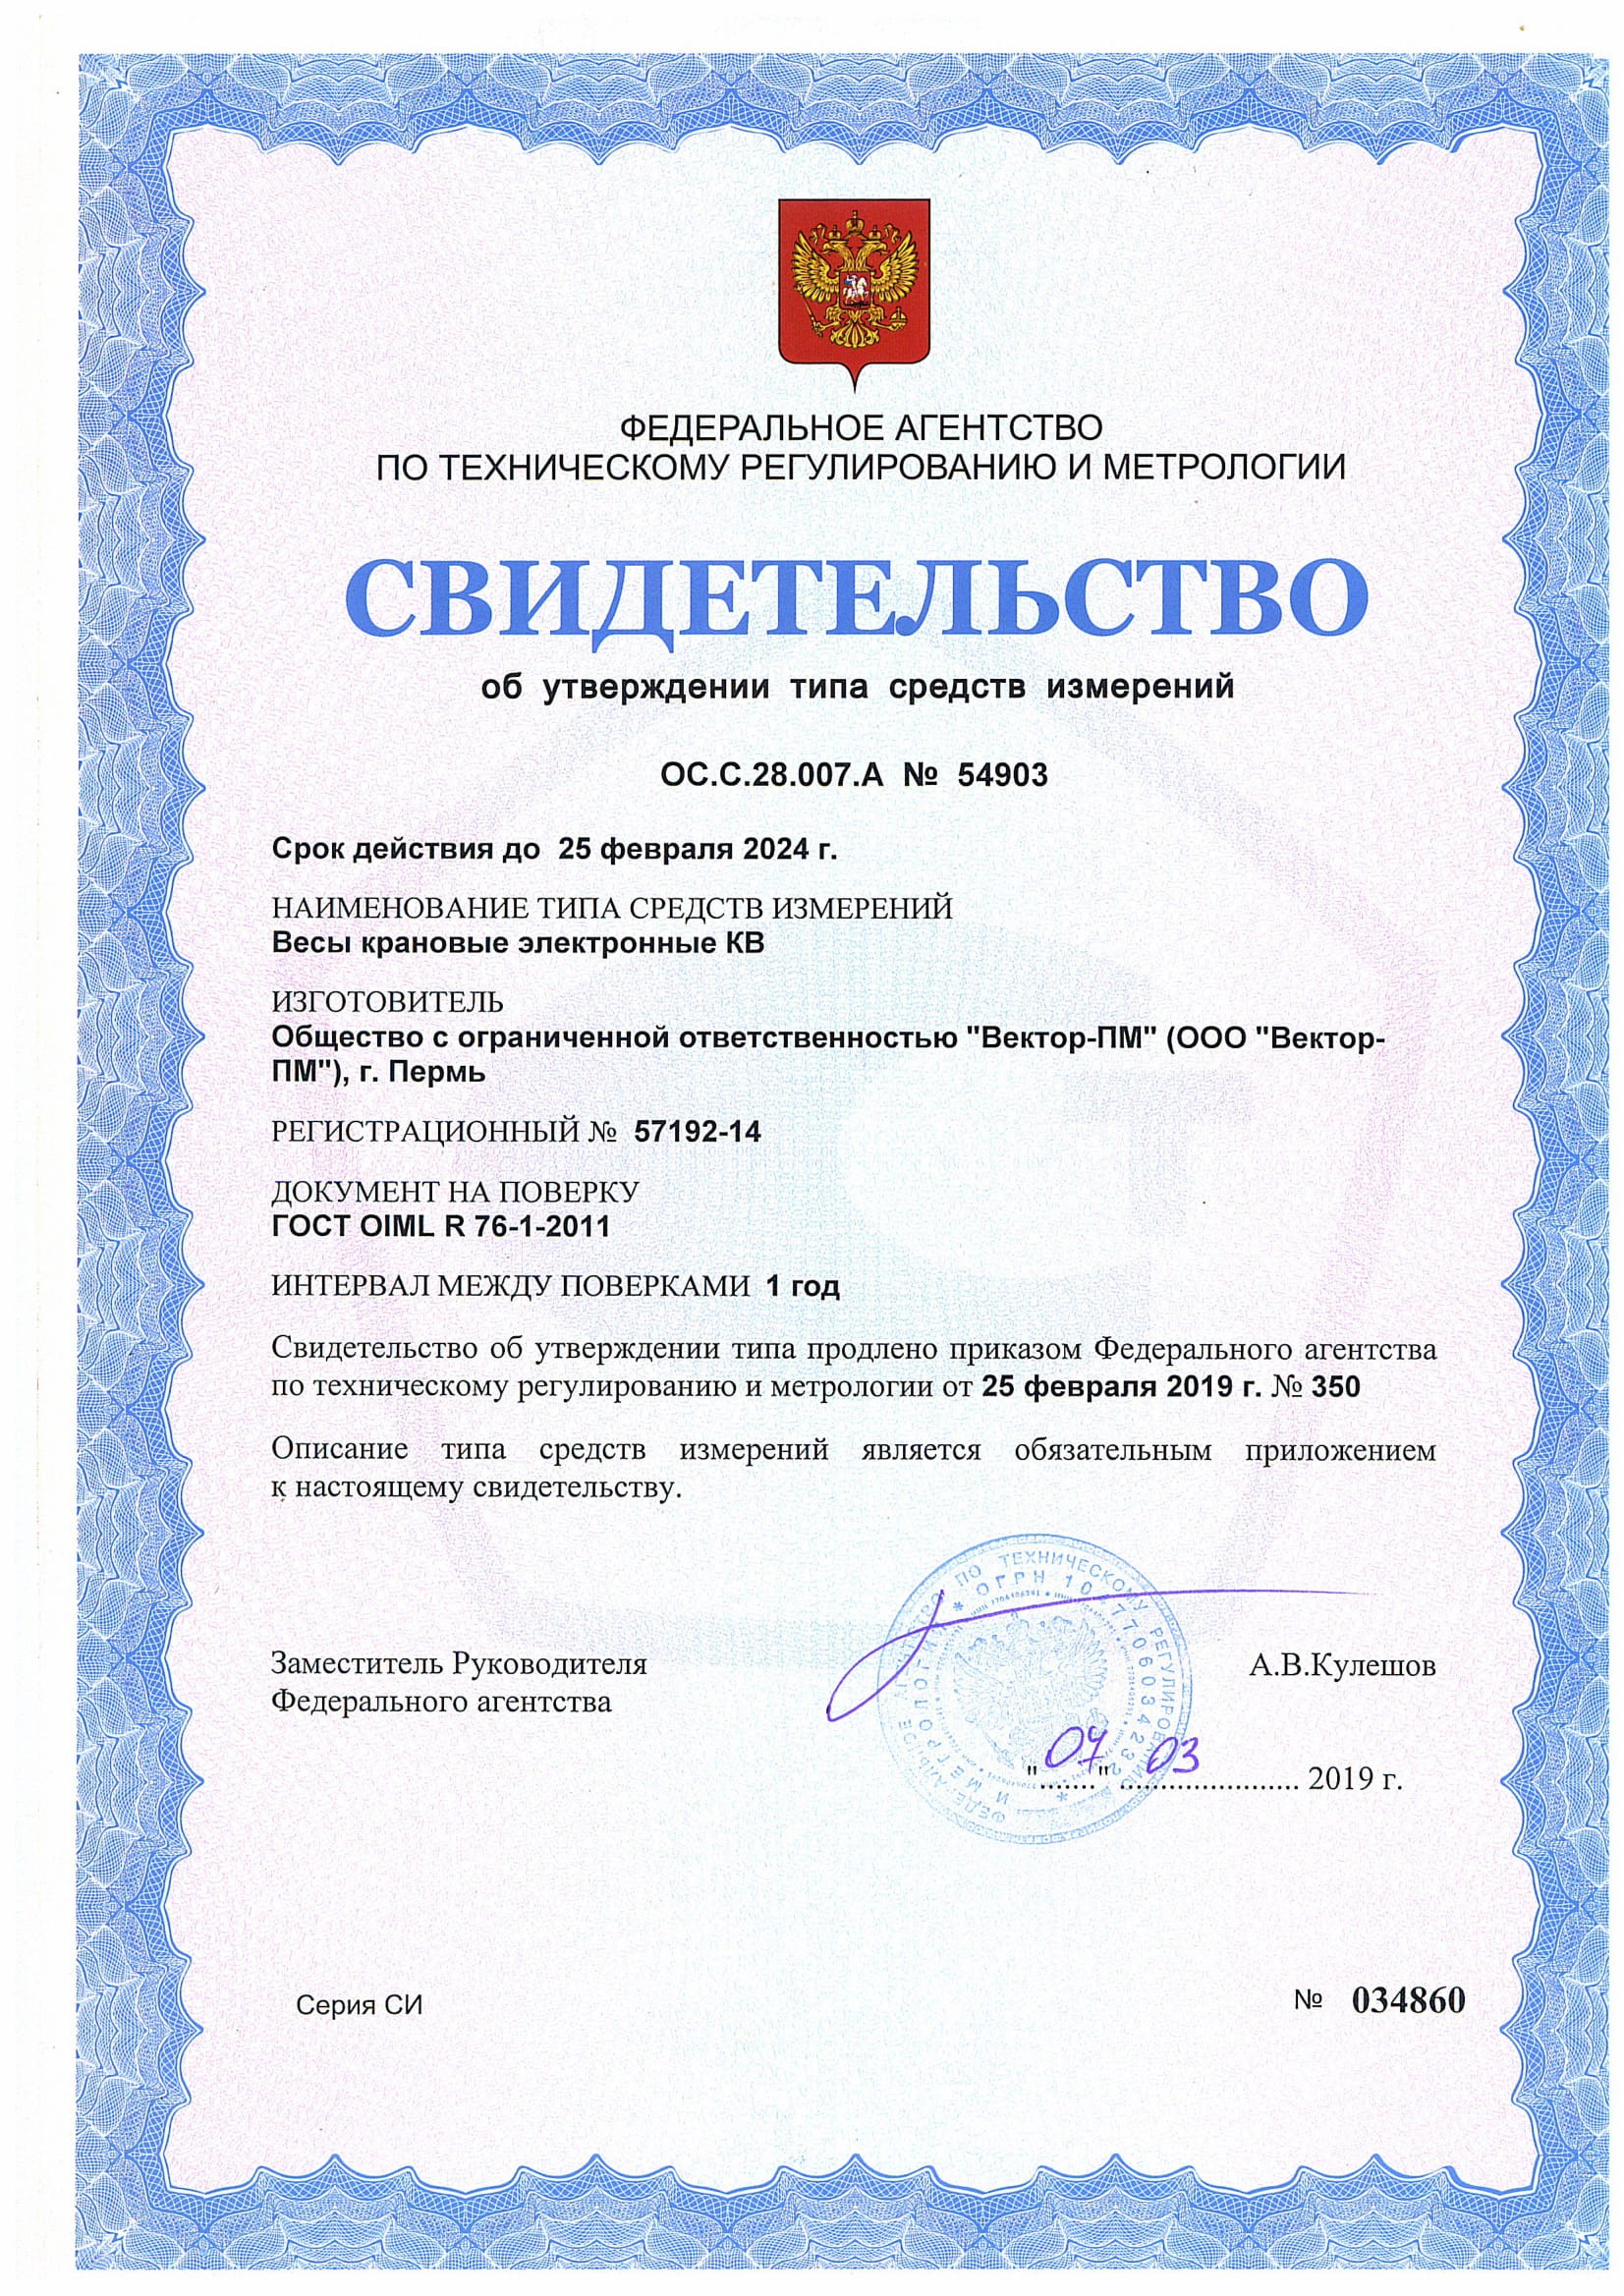 Сертификат на крановые весы (срок продлен)